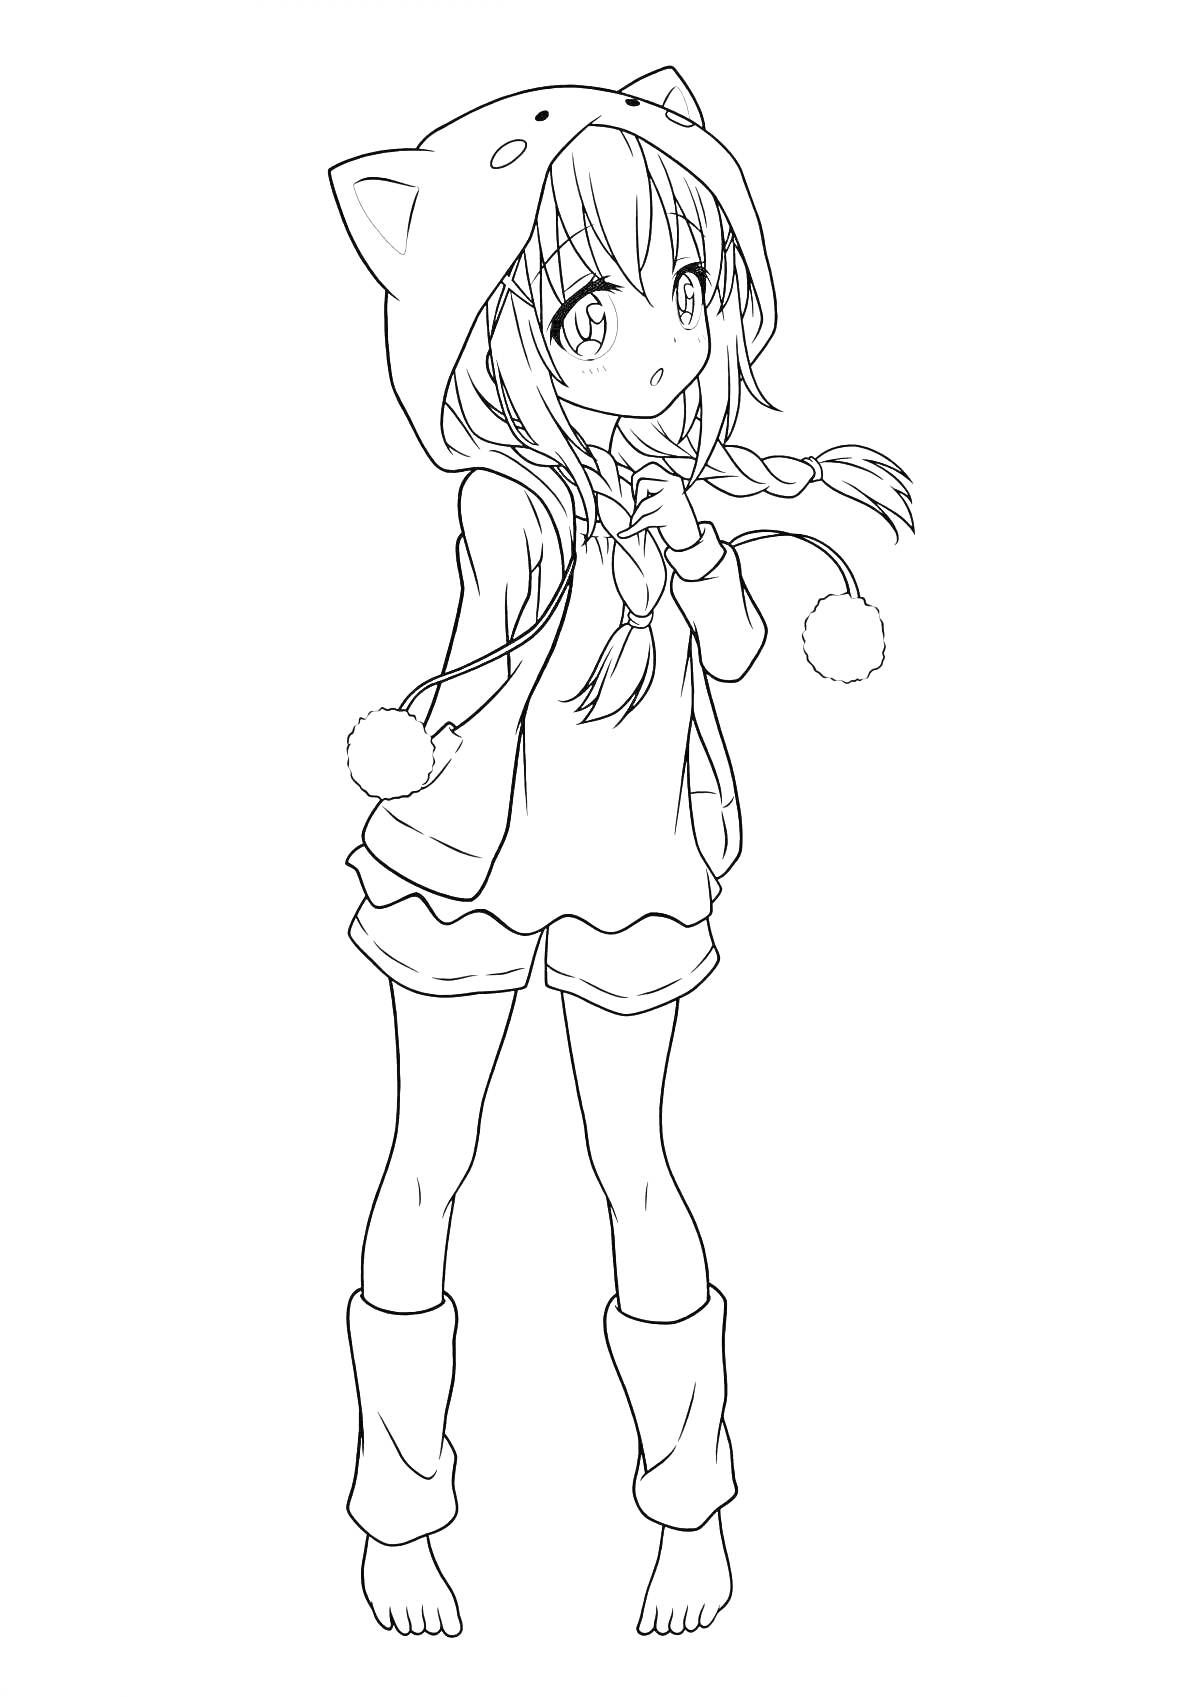 Раскраска аниме девушка в толстовке с капюшоном-ушками с помпонами, шорты, гетры